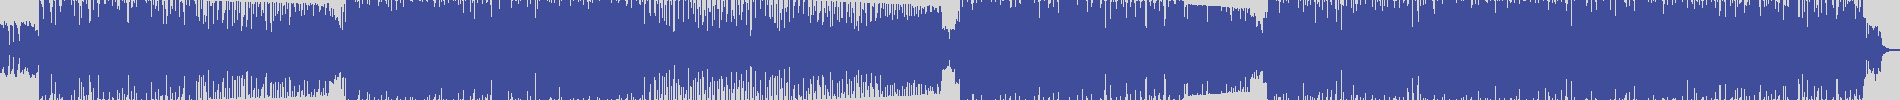 suxess [SX038] Dyson Kellerman - Pa Pa Pa [Radio Edit] audio wave form